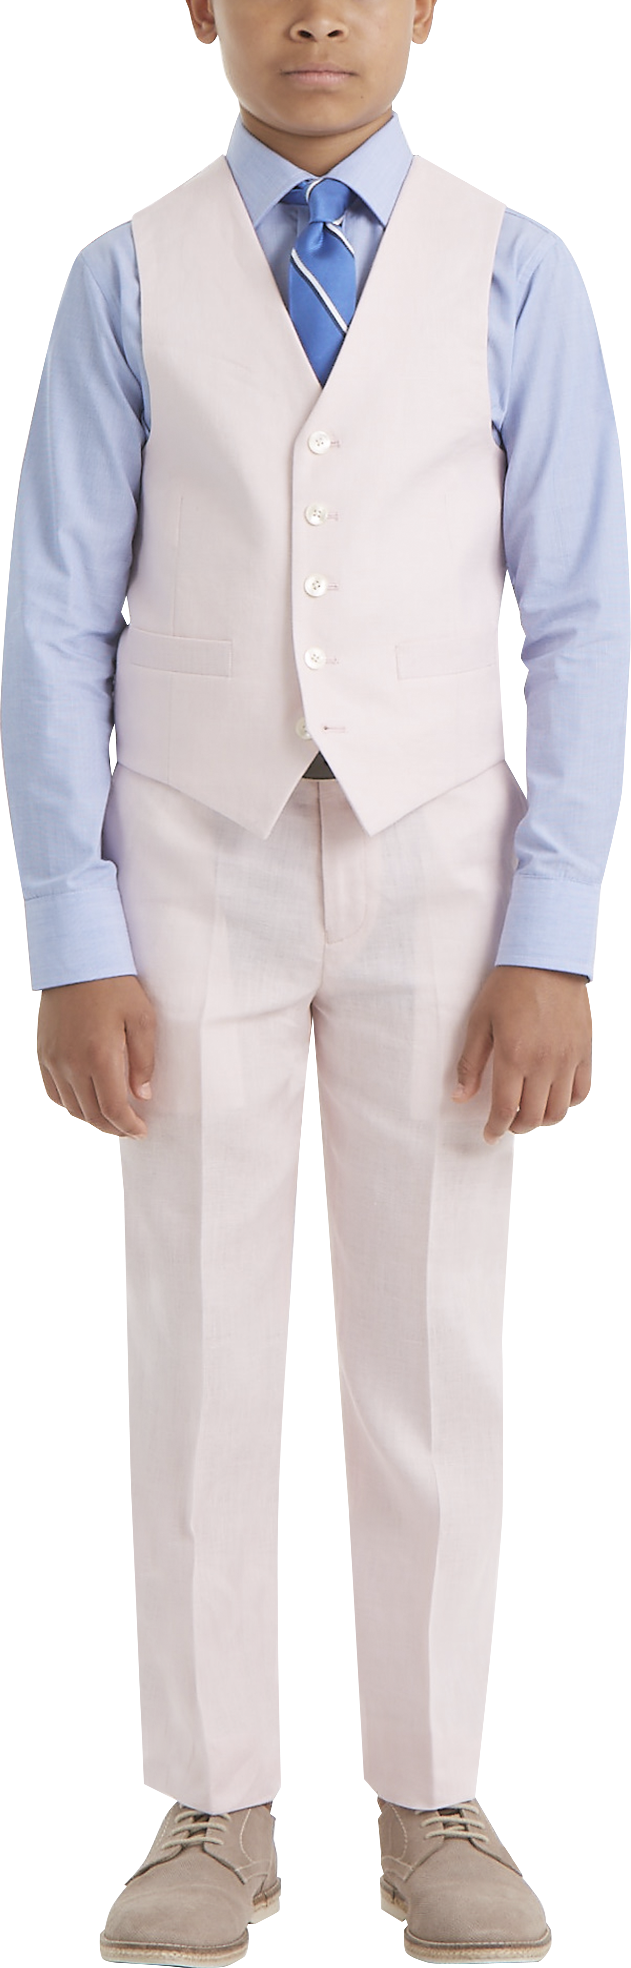 Mens Boys Suits & Tuxedos, Suits - Lauren By Ralph Lauren Boys (Sizes 4-7) Suit Separates Vest, Pink - Men's Wearhouse